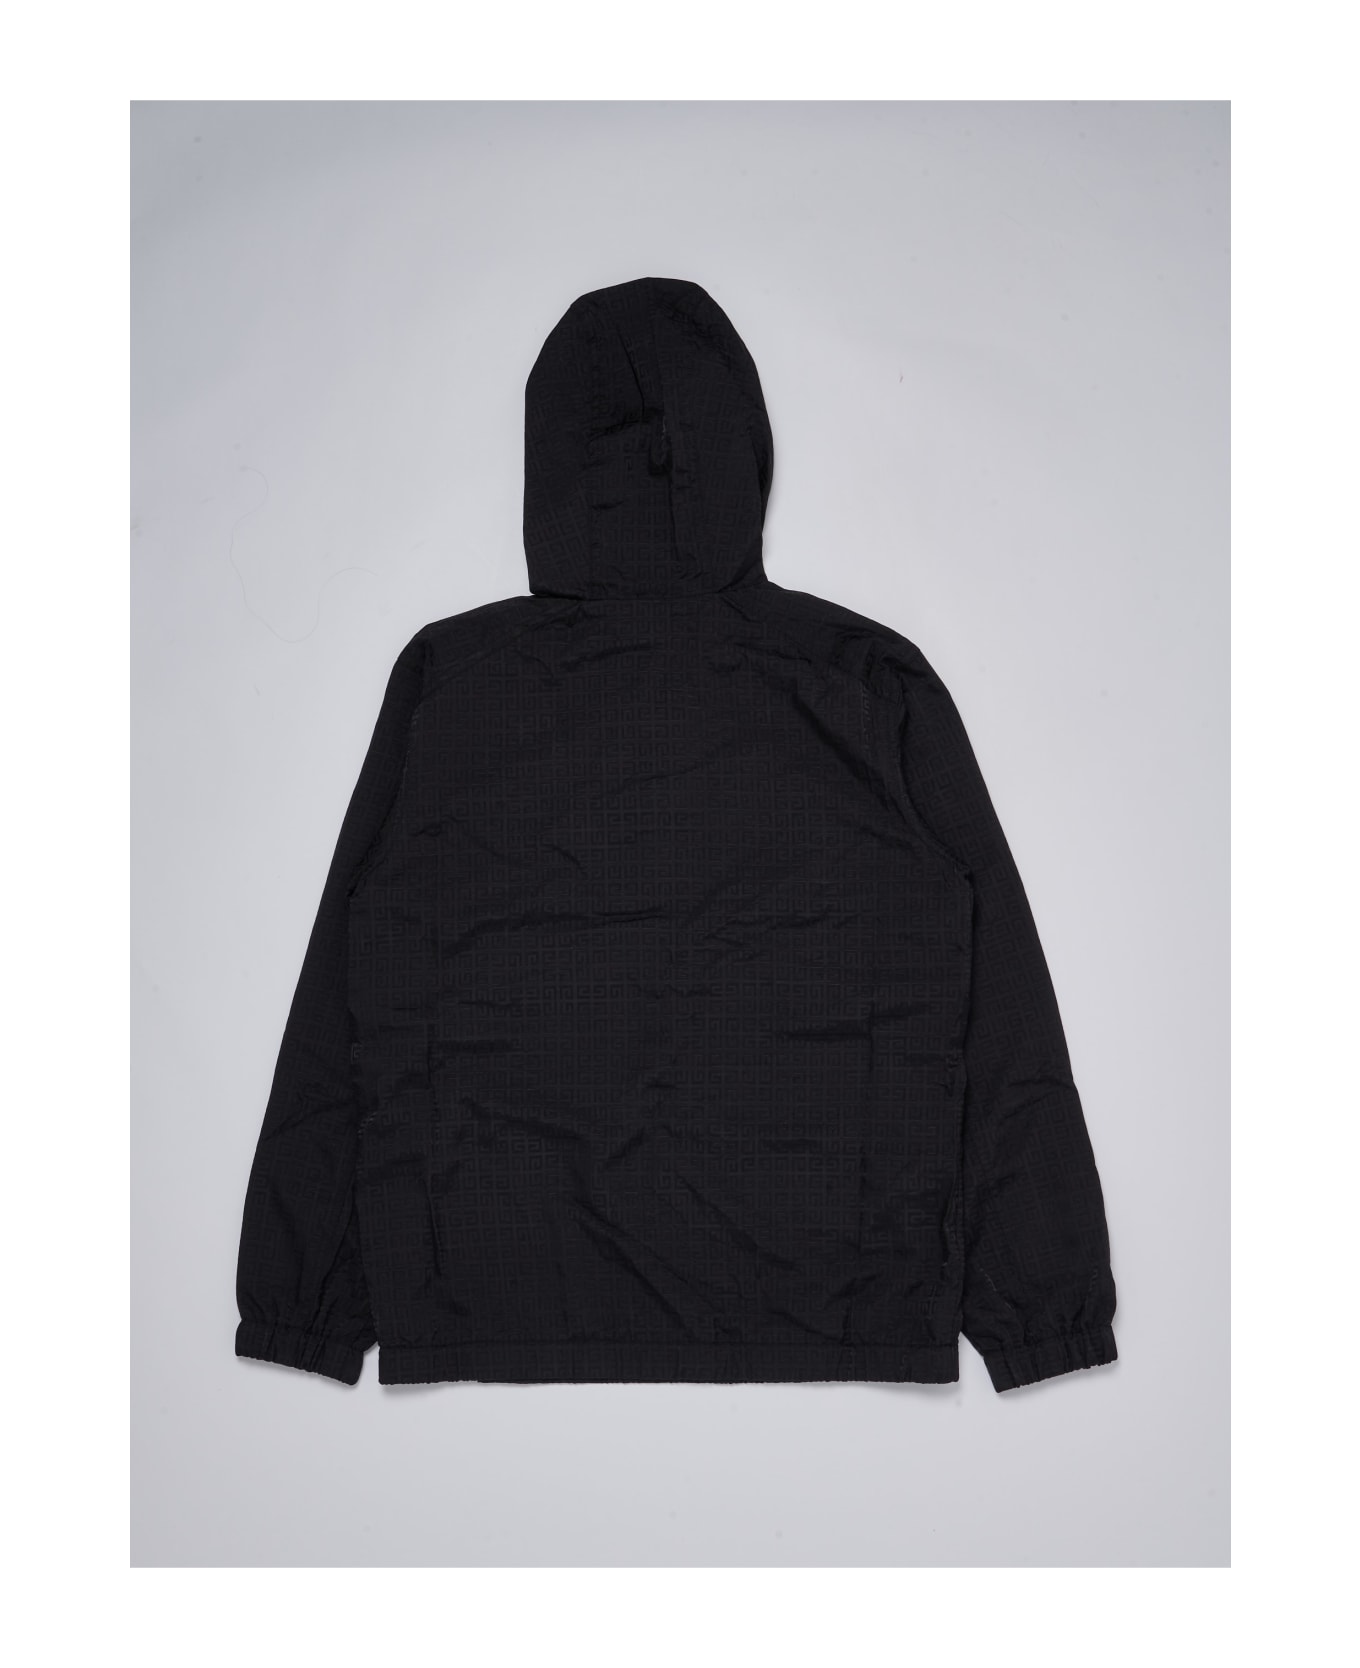 Givenchy Light Jacket Jacket - NERO コート＆ジャケット